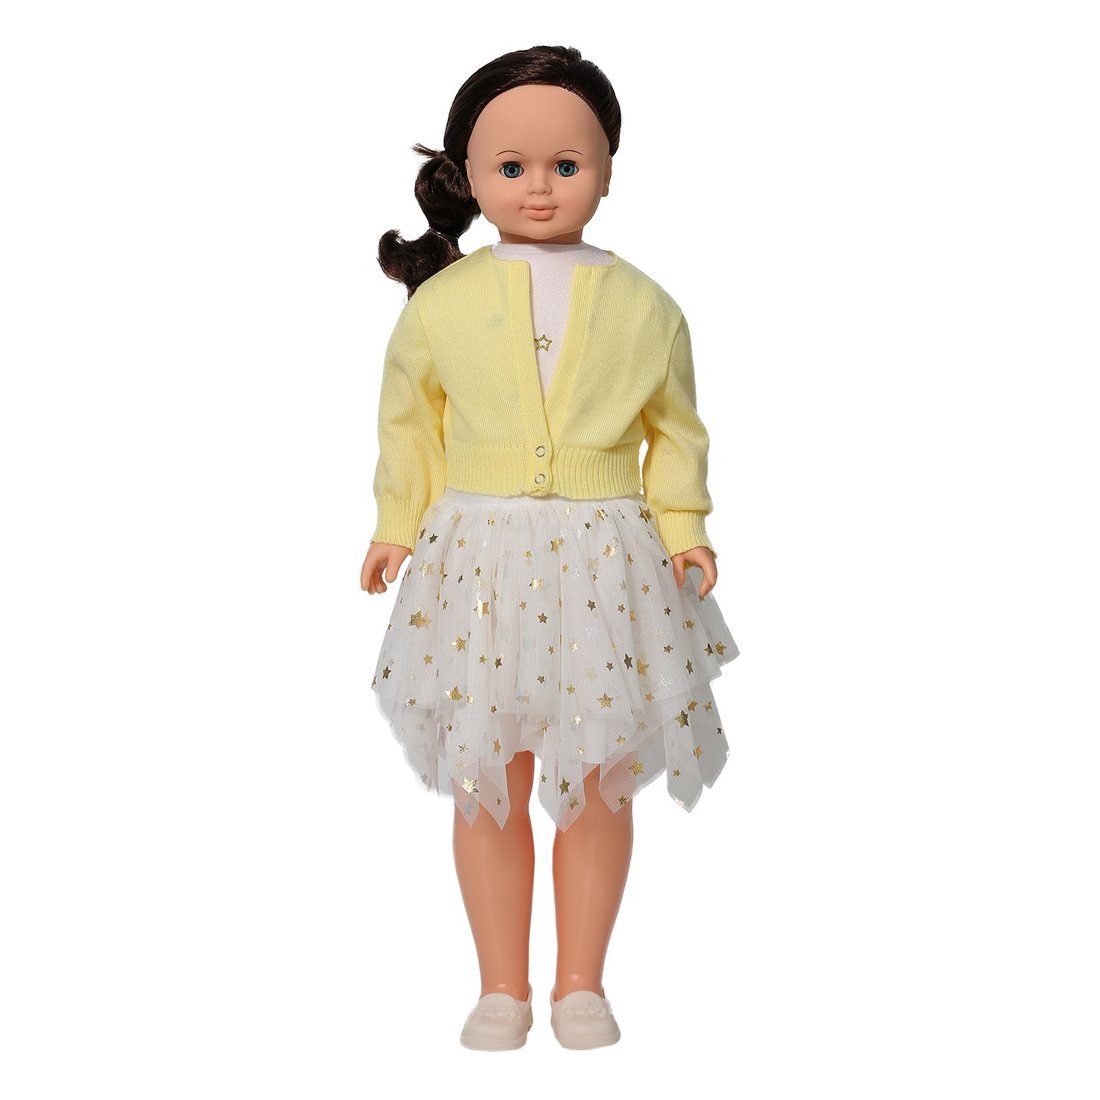 Кукла Снежана модница 4 озвученная 83 см В4141/о кукла анна модница 2 кукла пластмассовая озвученная 42 см весна в3717 о